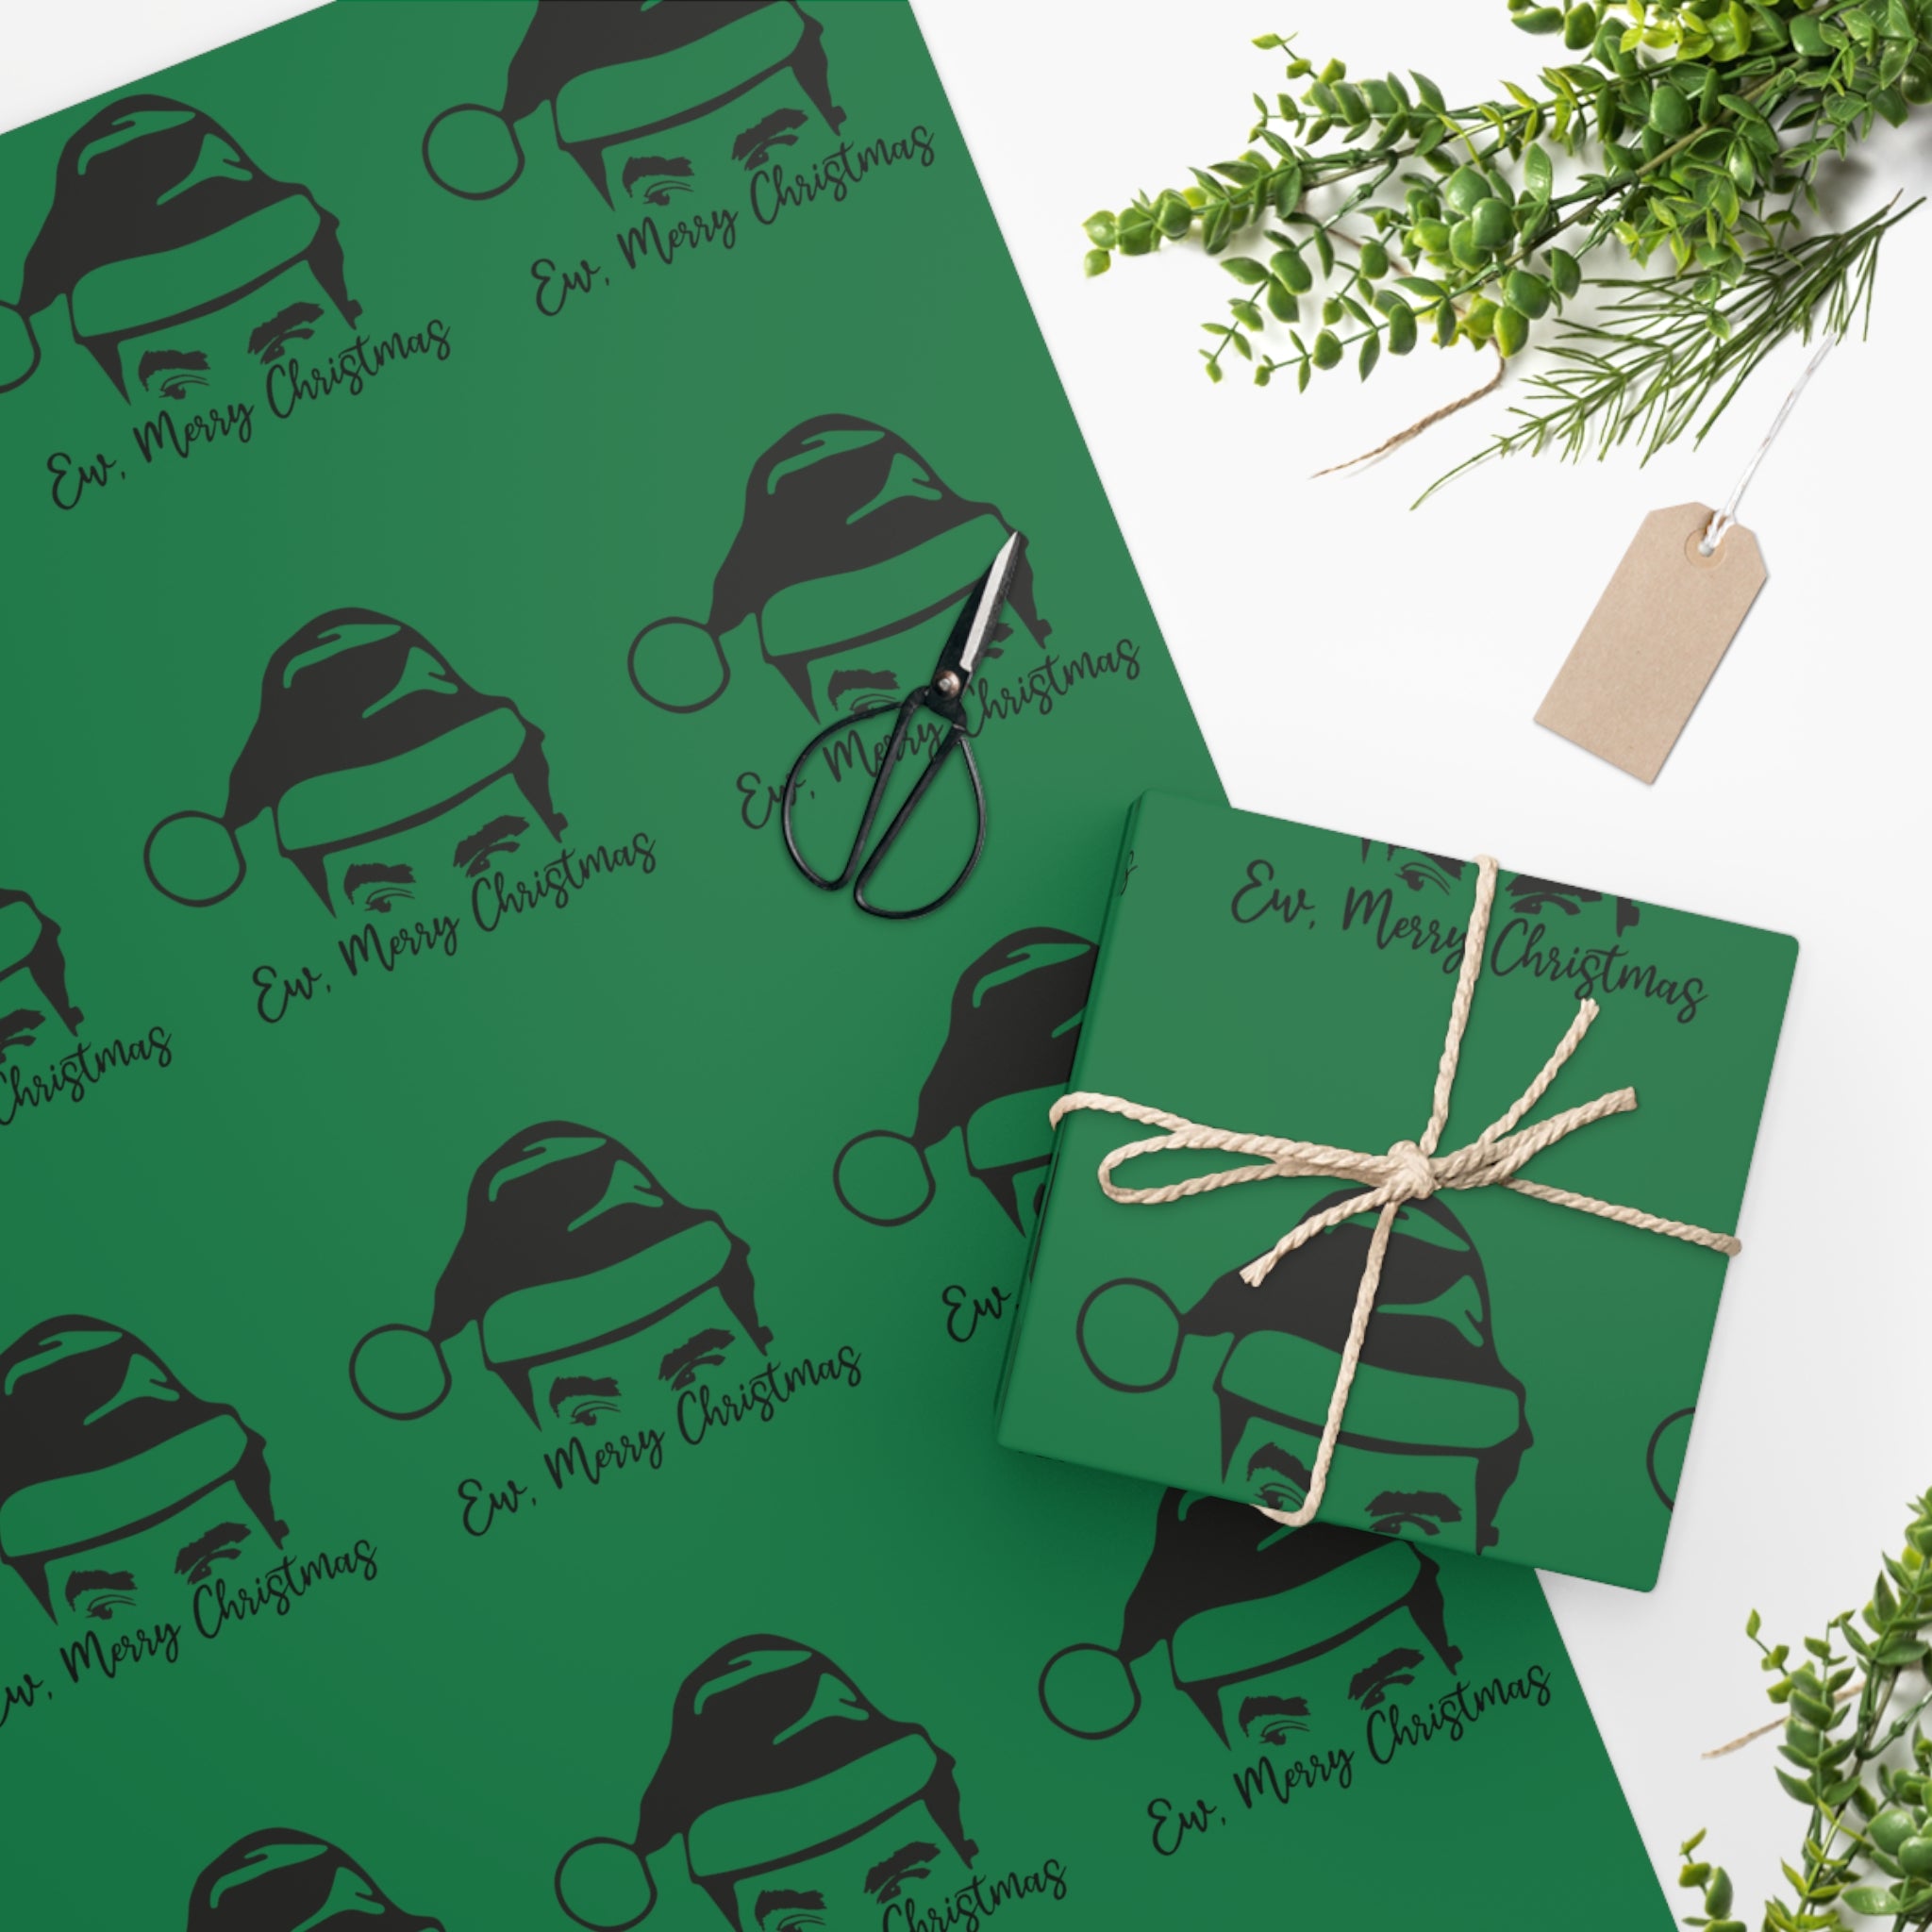 Schitt's Creek Green Ew, Merry Christmas Wrapping Paper Green